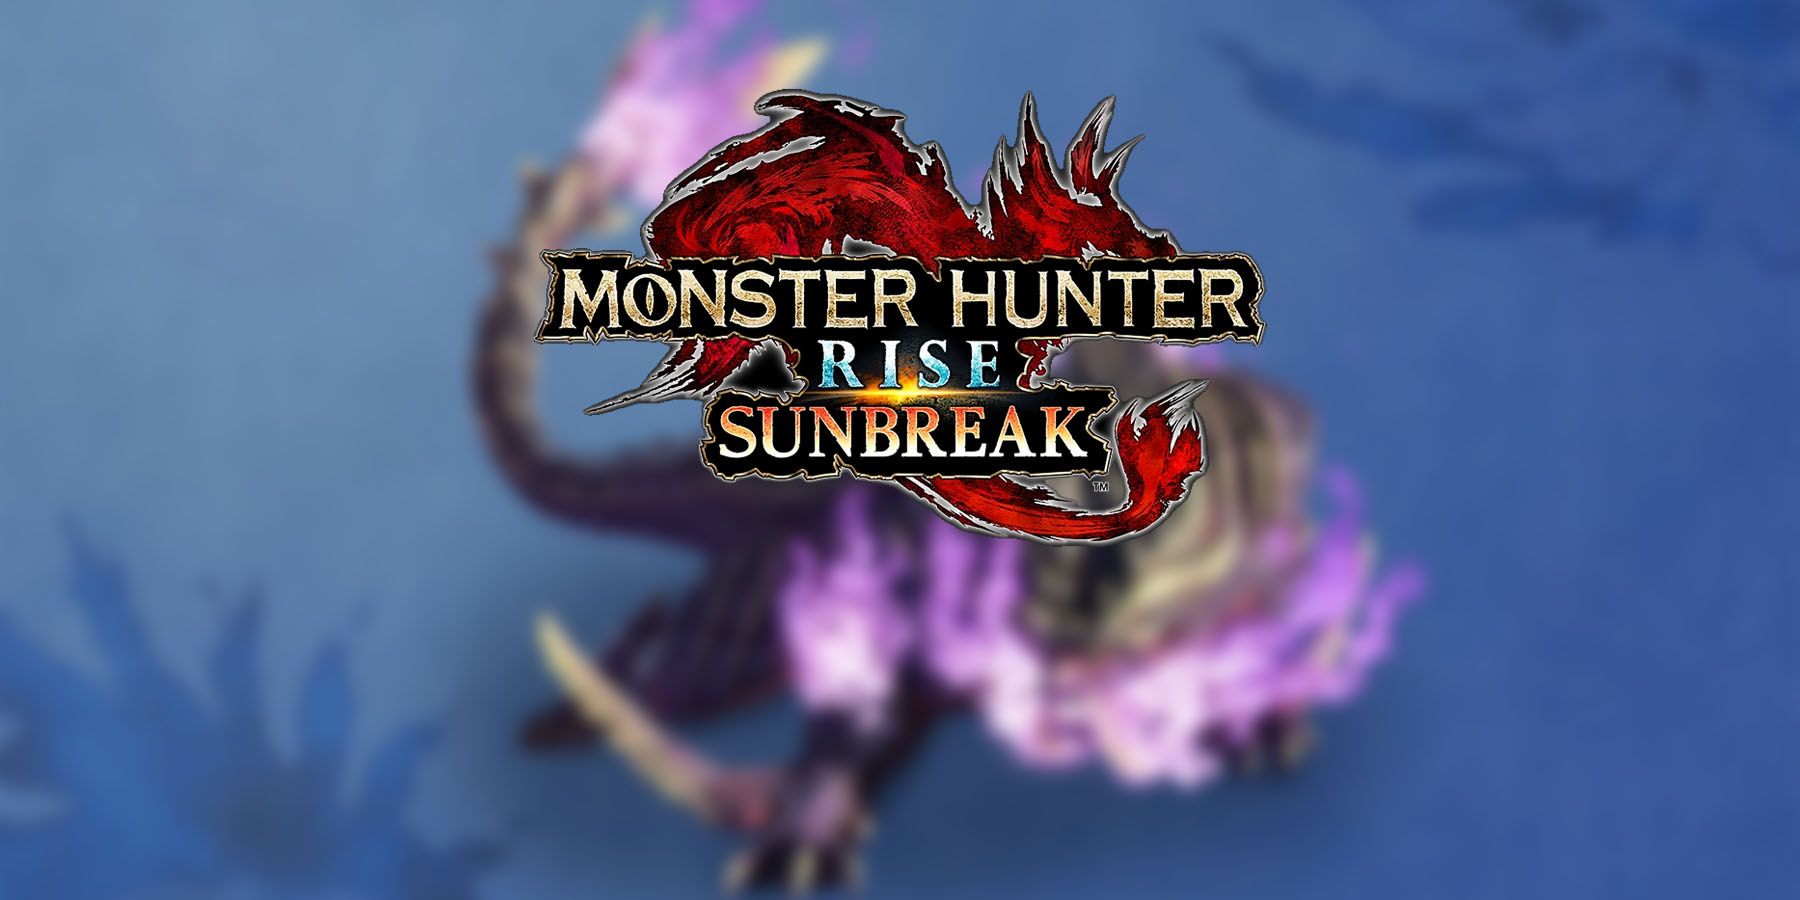 Monster Hunter Sunbreak